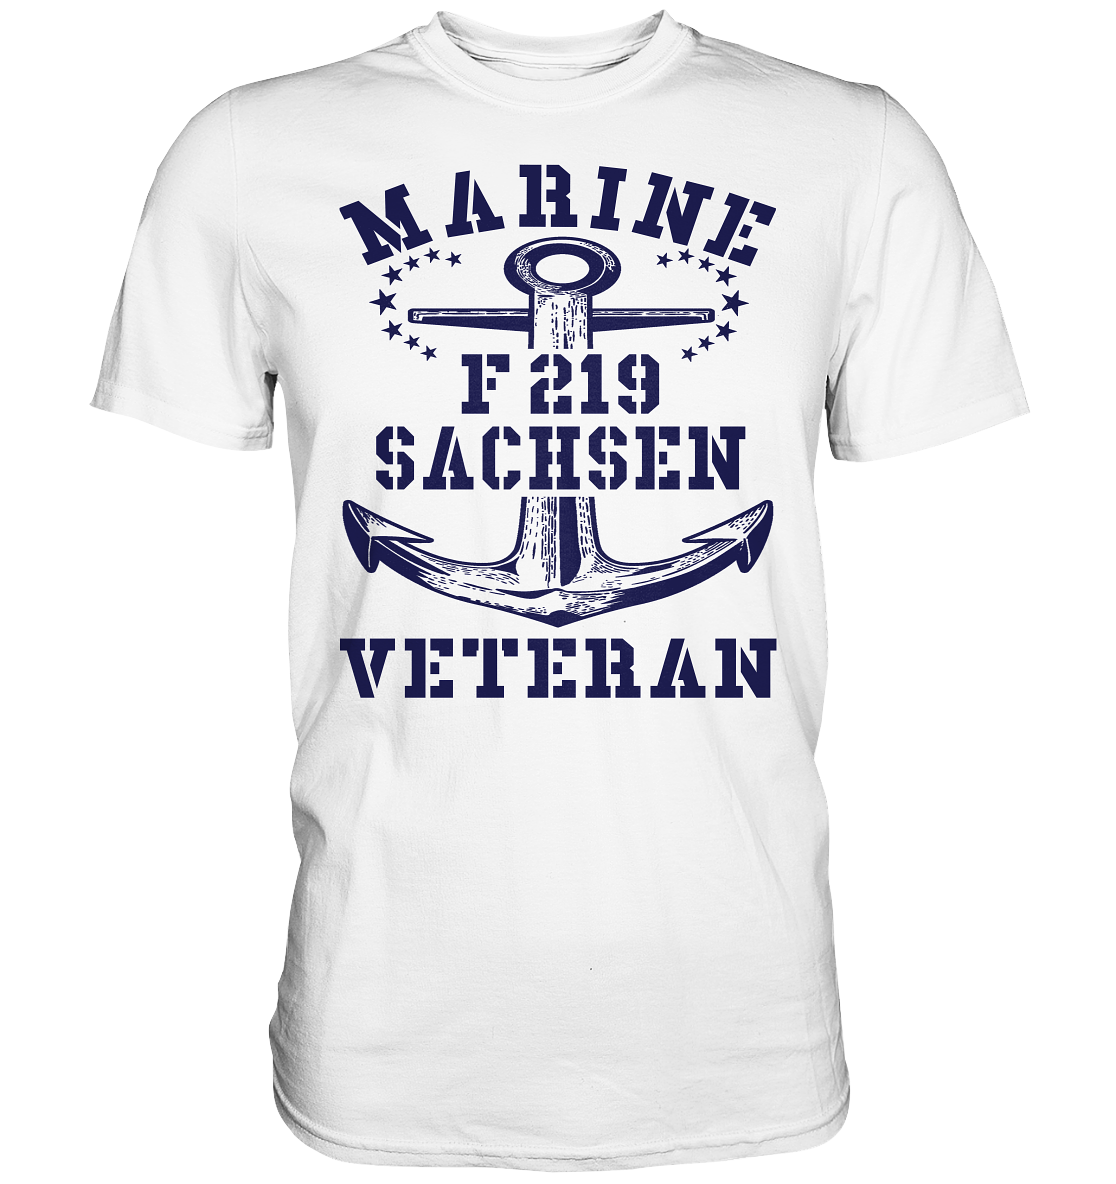 Fregatte F219 SACHSEN Marine Veteran - Premium Shirt